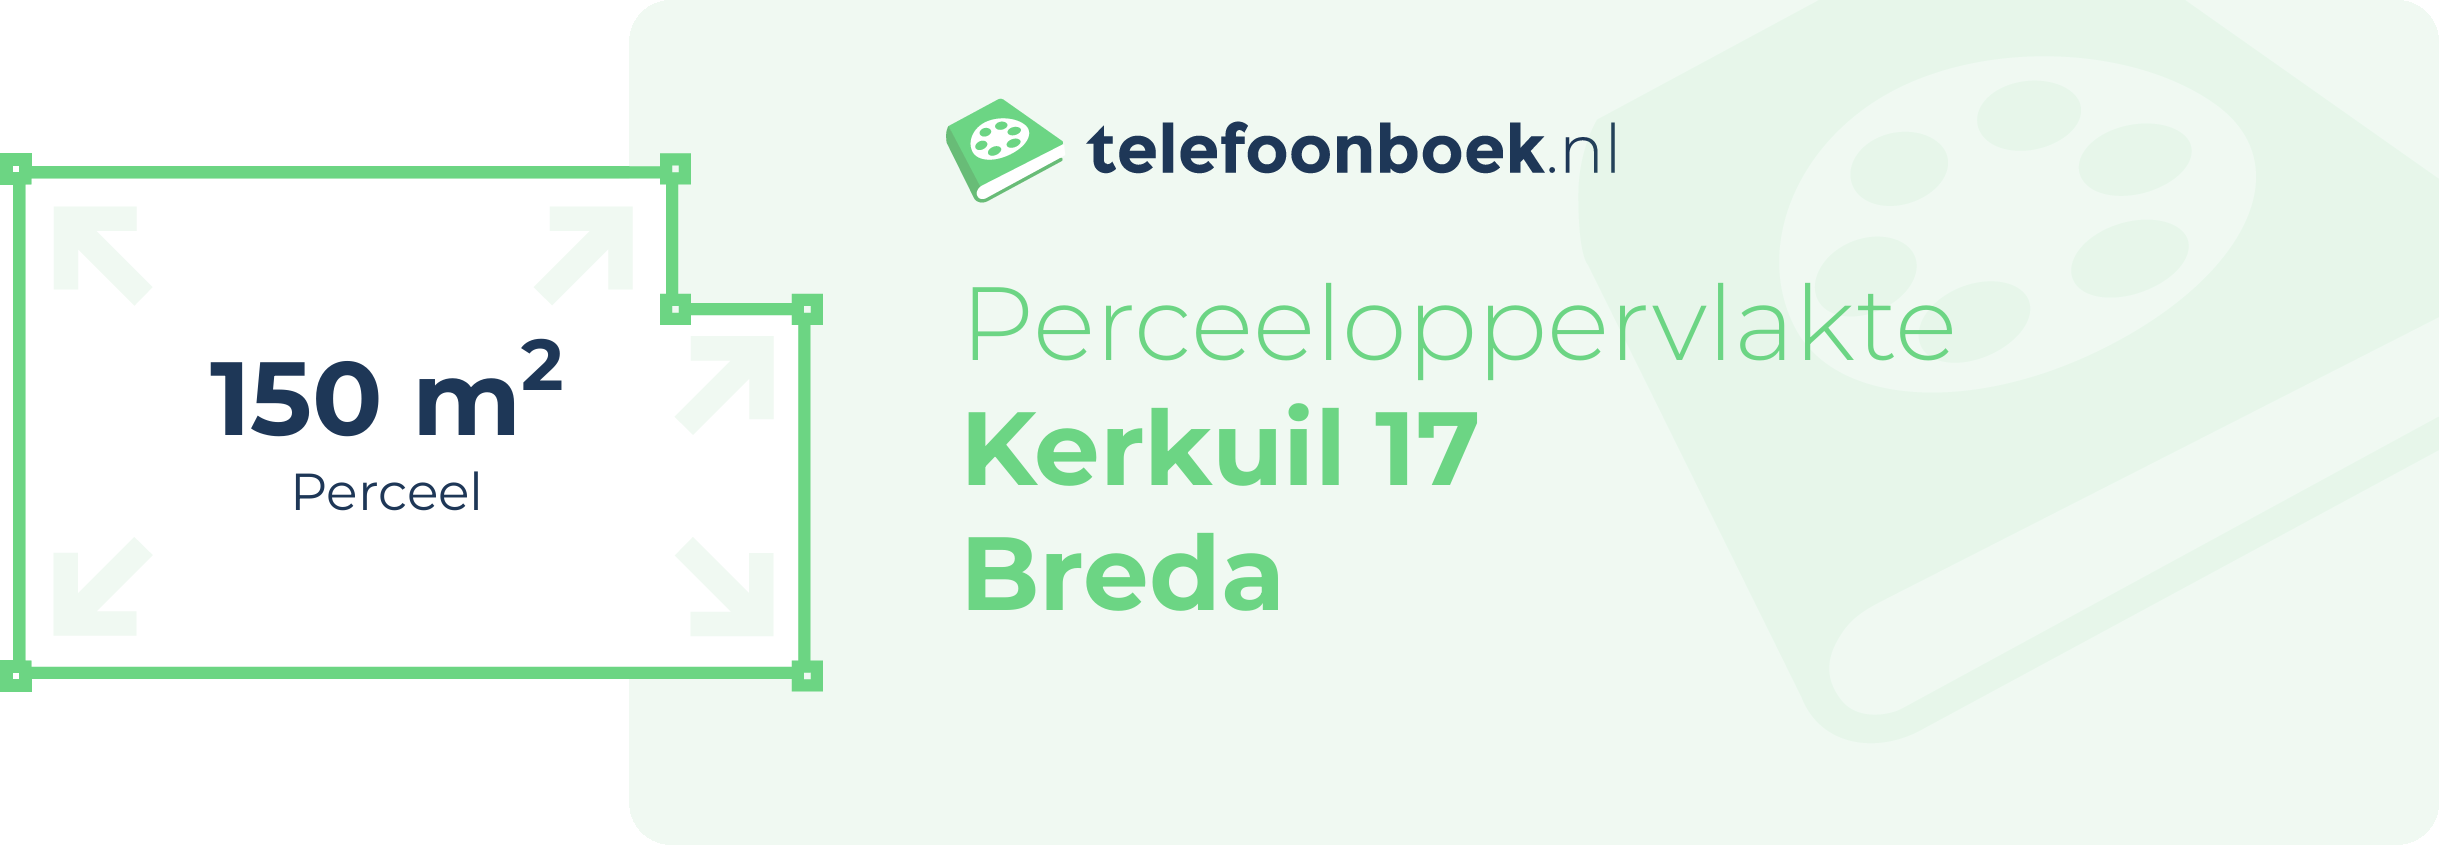 Perceeloppervlakte Kerkuil 17 Breda